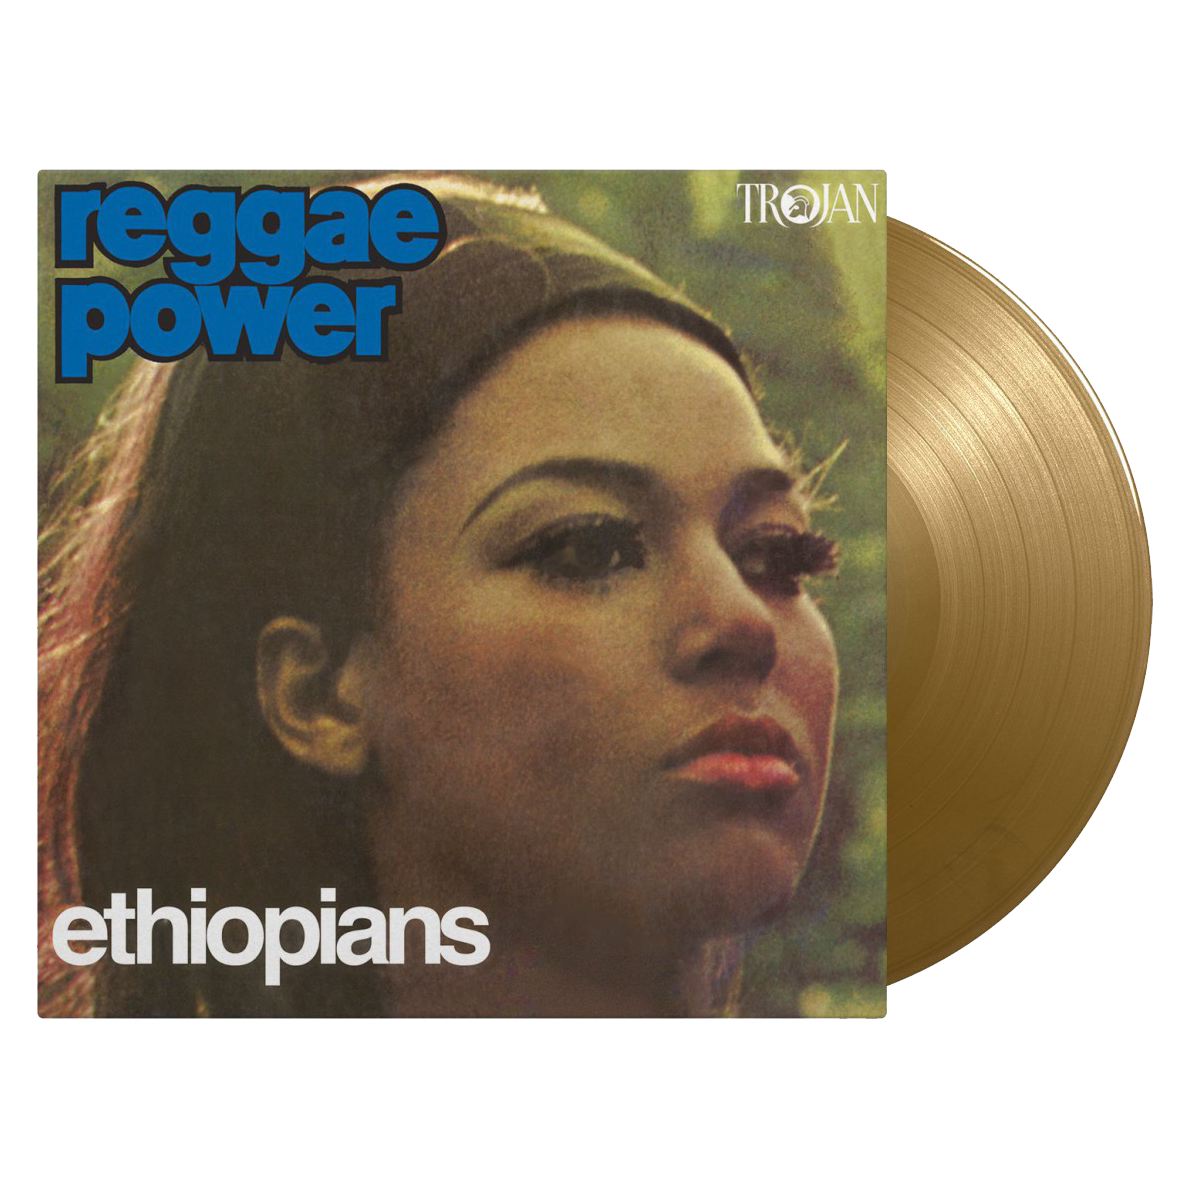 The Ethiopians - Reggae Power: Limited Edition Gold Colour Vinyl LP